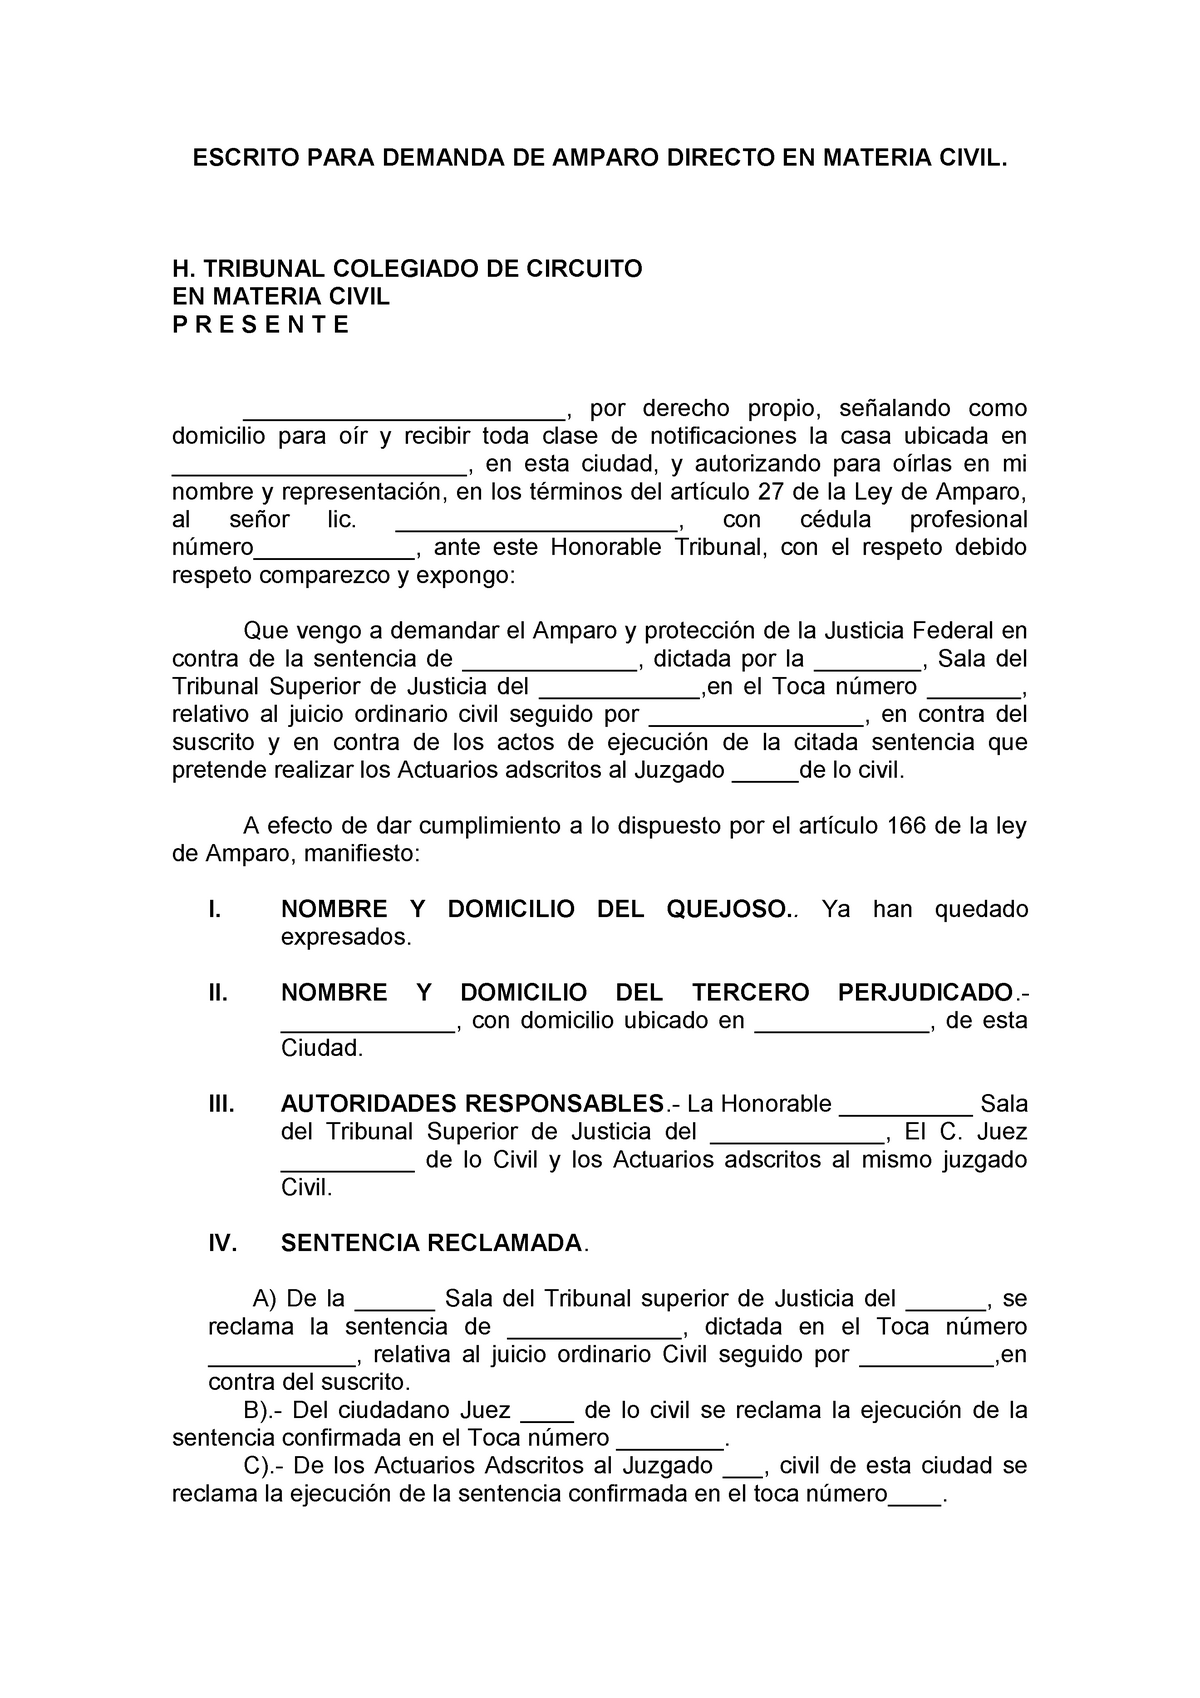 Amparo directo materia civil - ESCRITO PARA DEMANDA DE AMPARO DIRECTO EN MATERIA  CIVIL. H. TRIBUNAL - Studocu